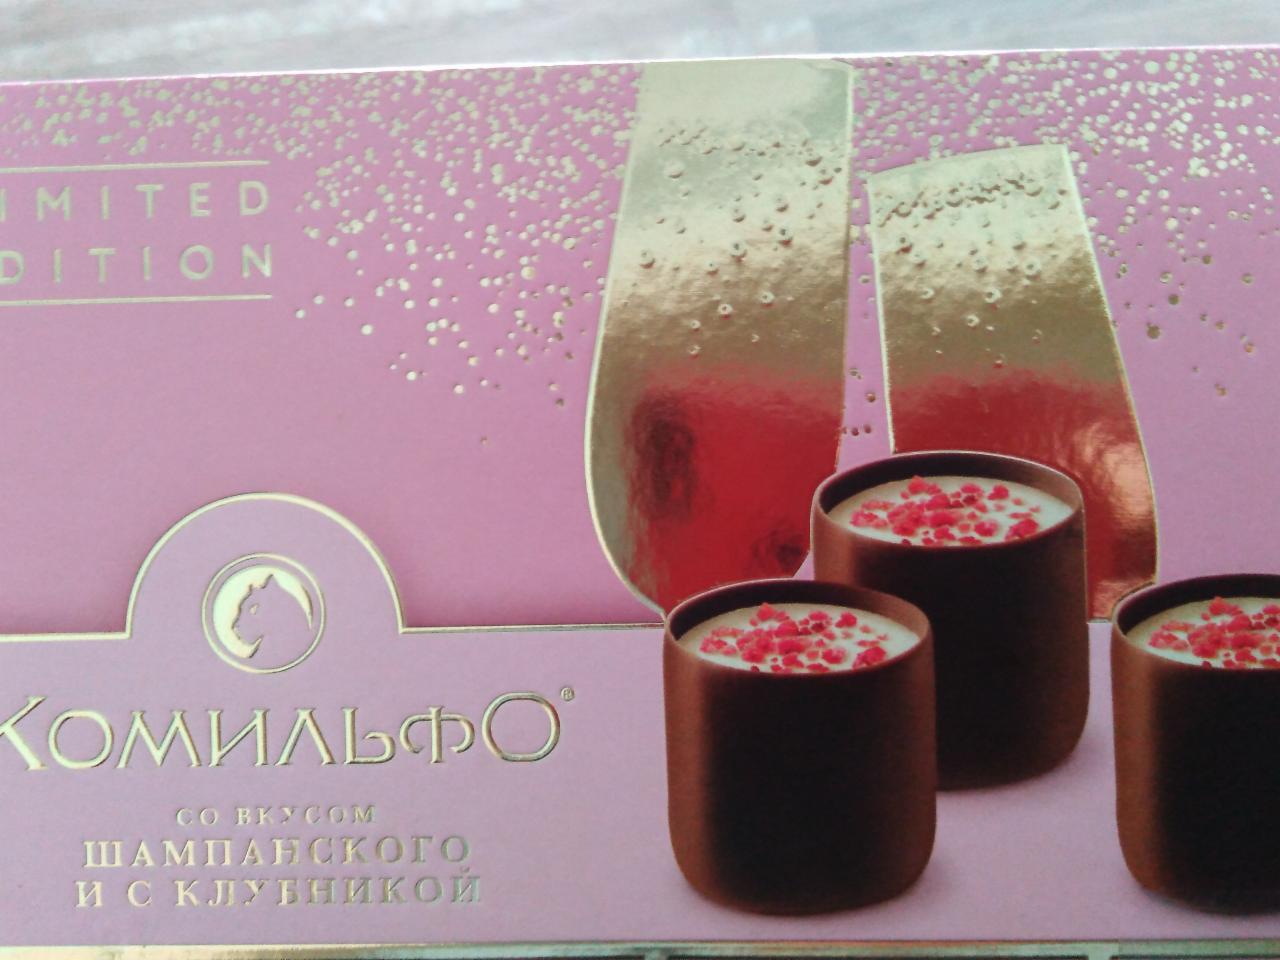 Фото - Шоколадные конфеты со вкусом шампанского и с клубникой Комильфо